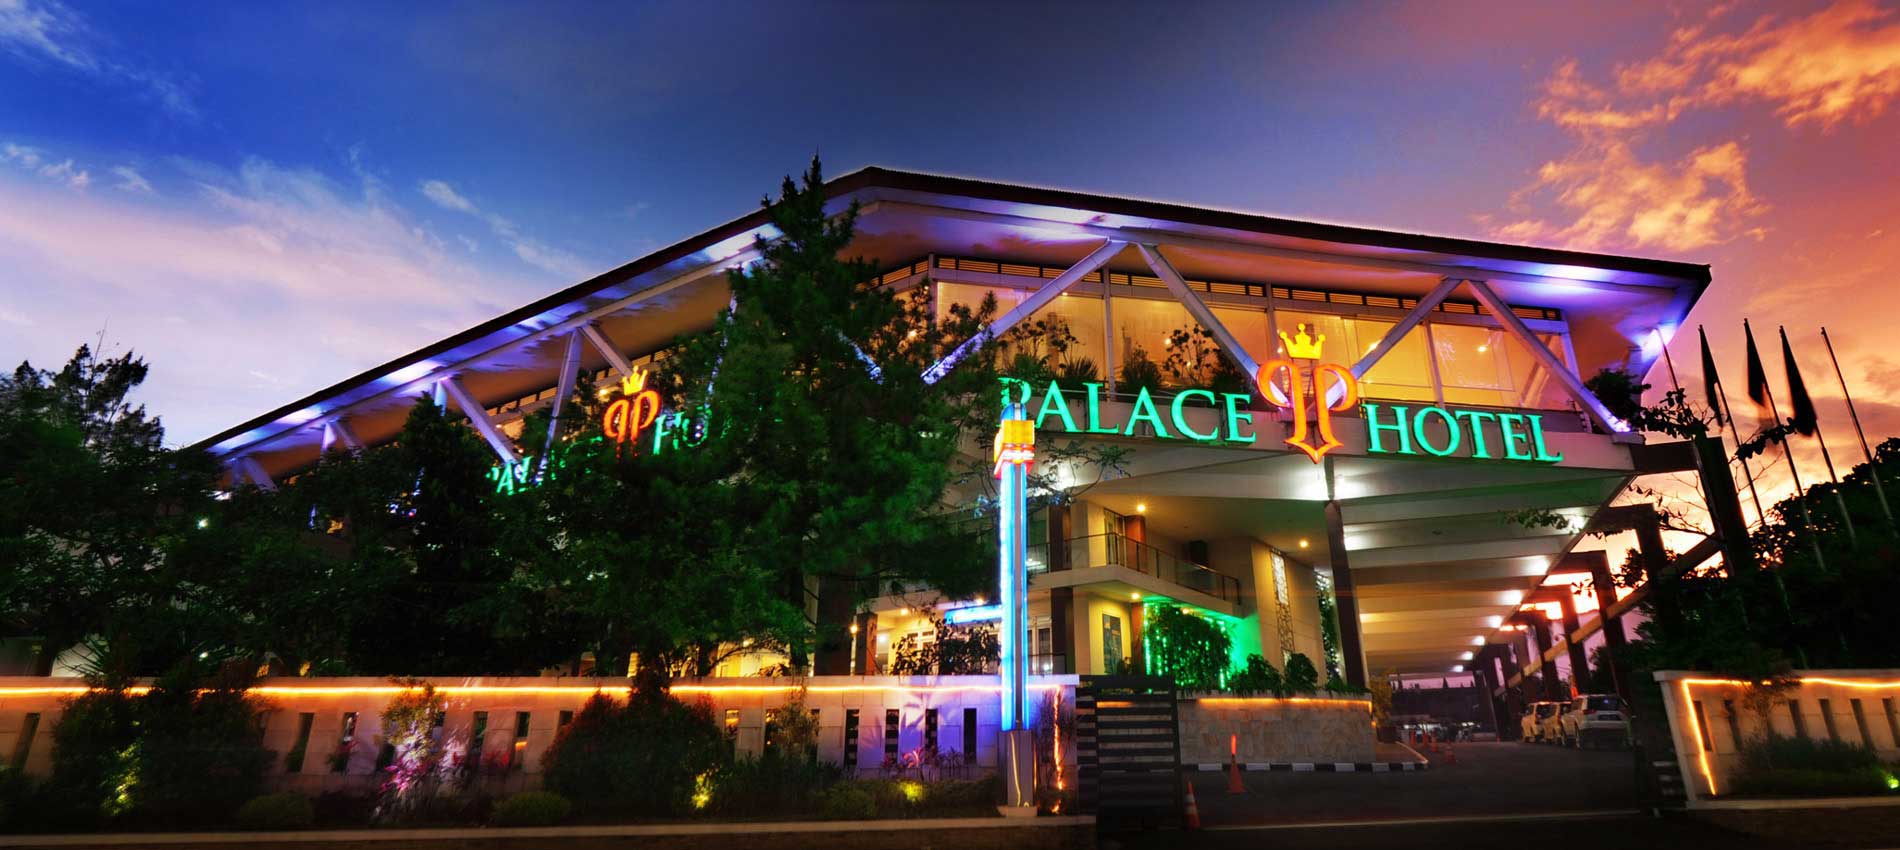 5 Fasilitas Hotel Bintang 4 yang Bisa Anda Rasakan di Palace Hotel Cipanas